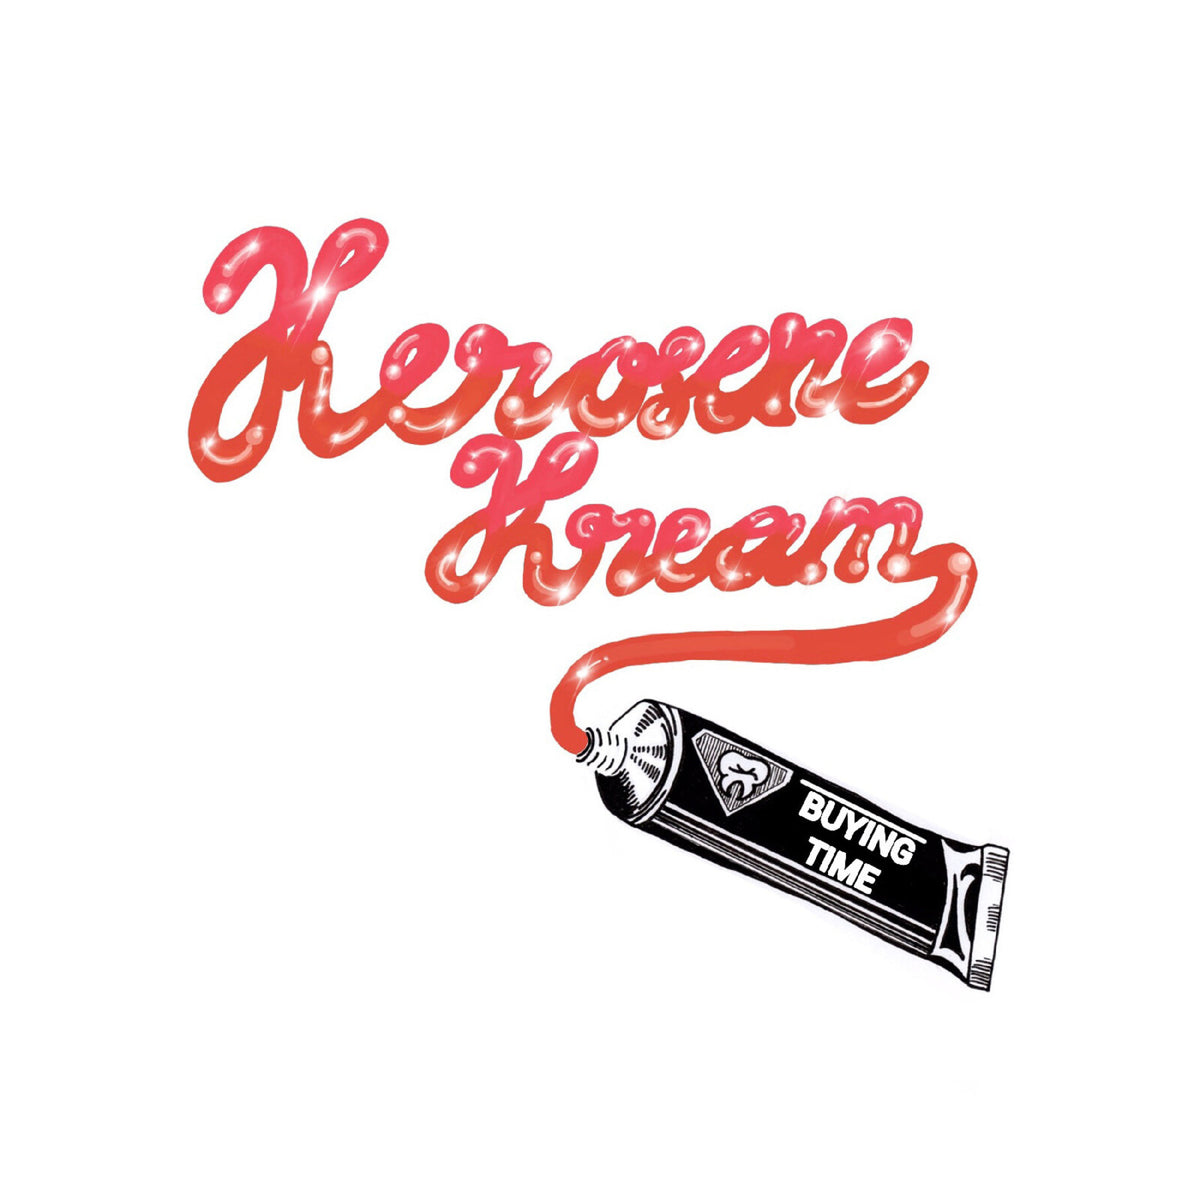 Kerosene Kream - Buying Time - LPPNKSLM113C